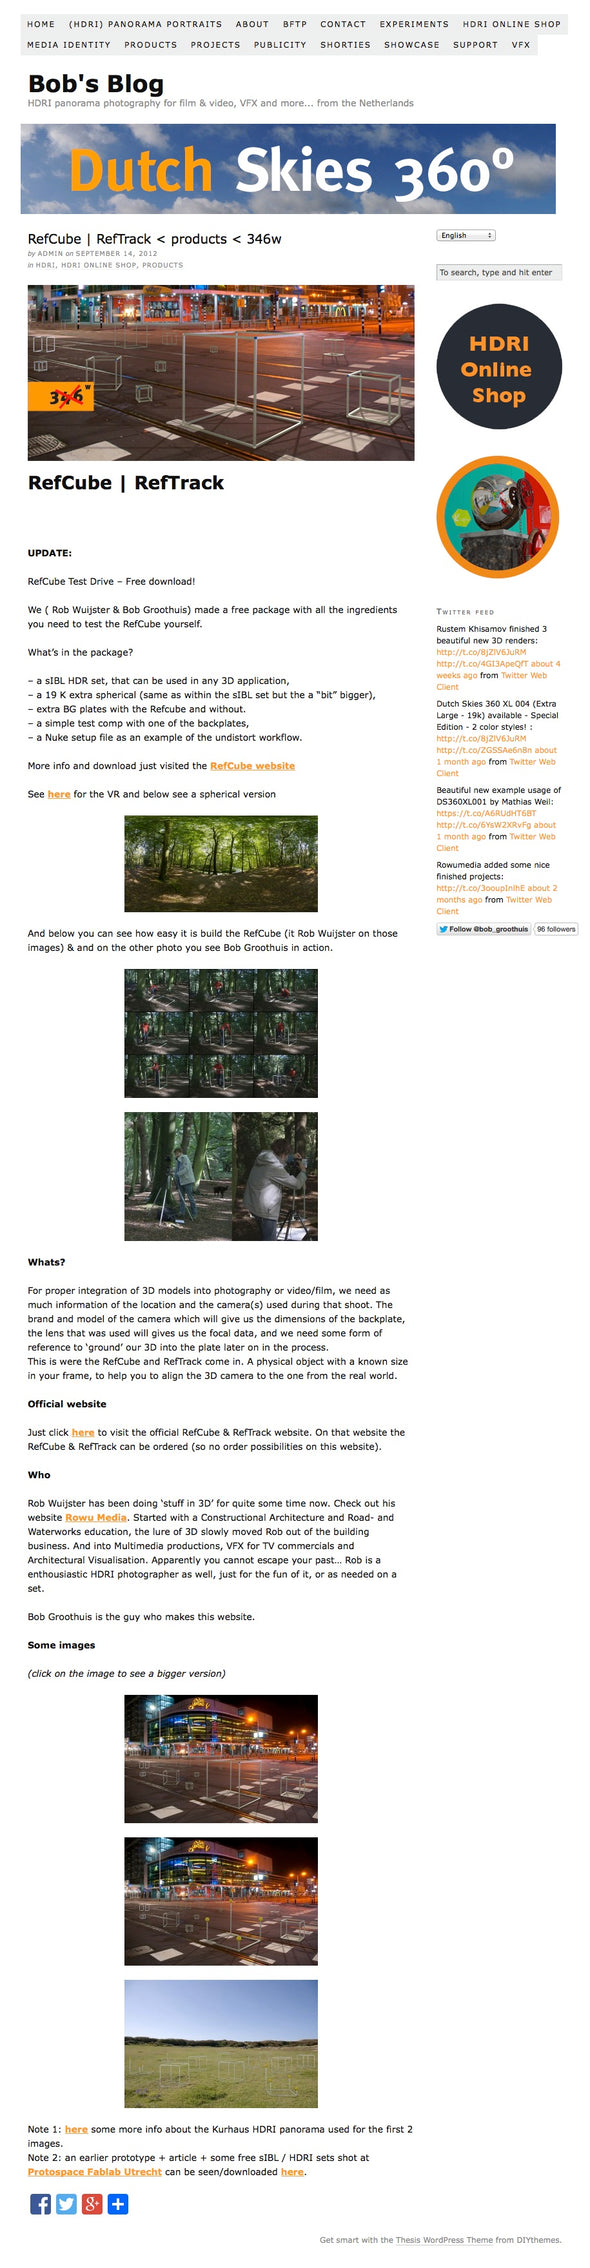 Dutch Free 360° HDRI – 015 | Forest scene original article